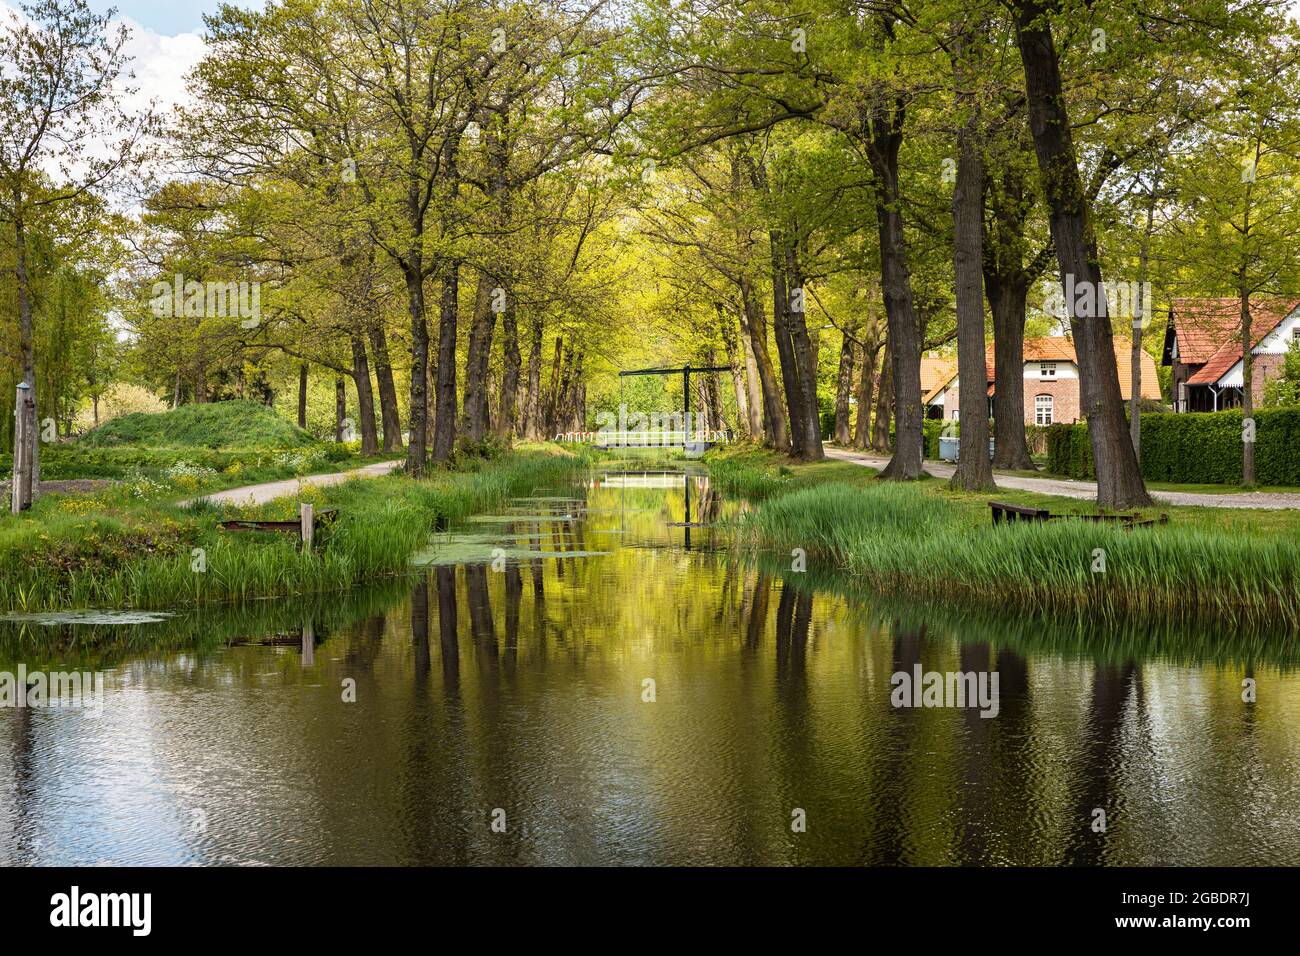 Kanal mit Wasser, umgeben von Gras, Grün und Natur, an einem sonnigen Tag auf einer ruhigen, malerischen holländischen ländlichen Landschaft in Grientsveen, Niederlande Stockfoto